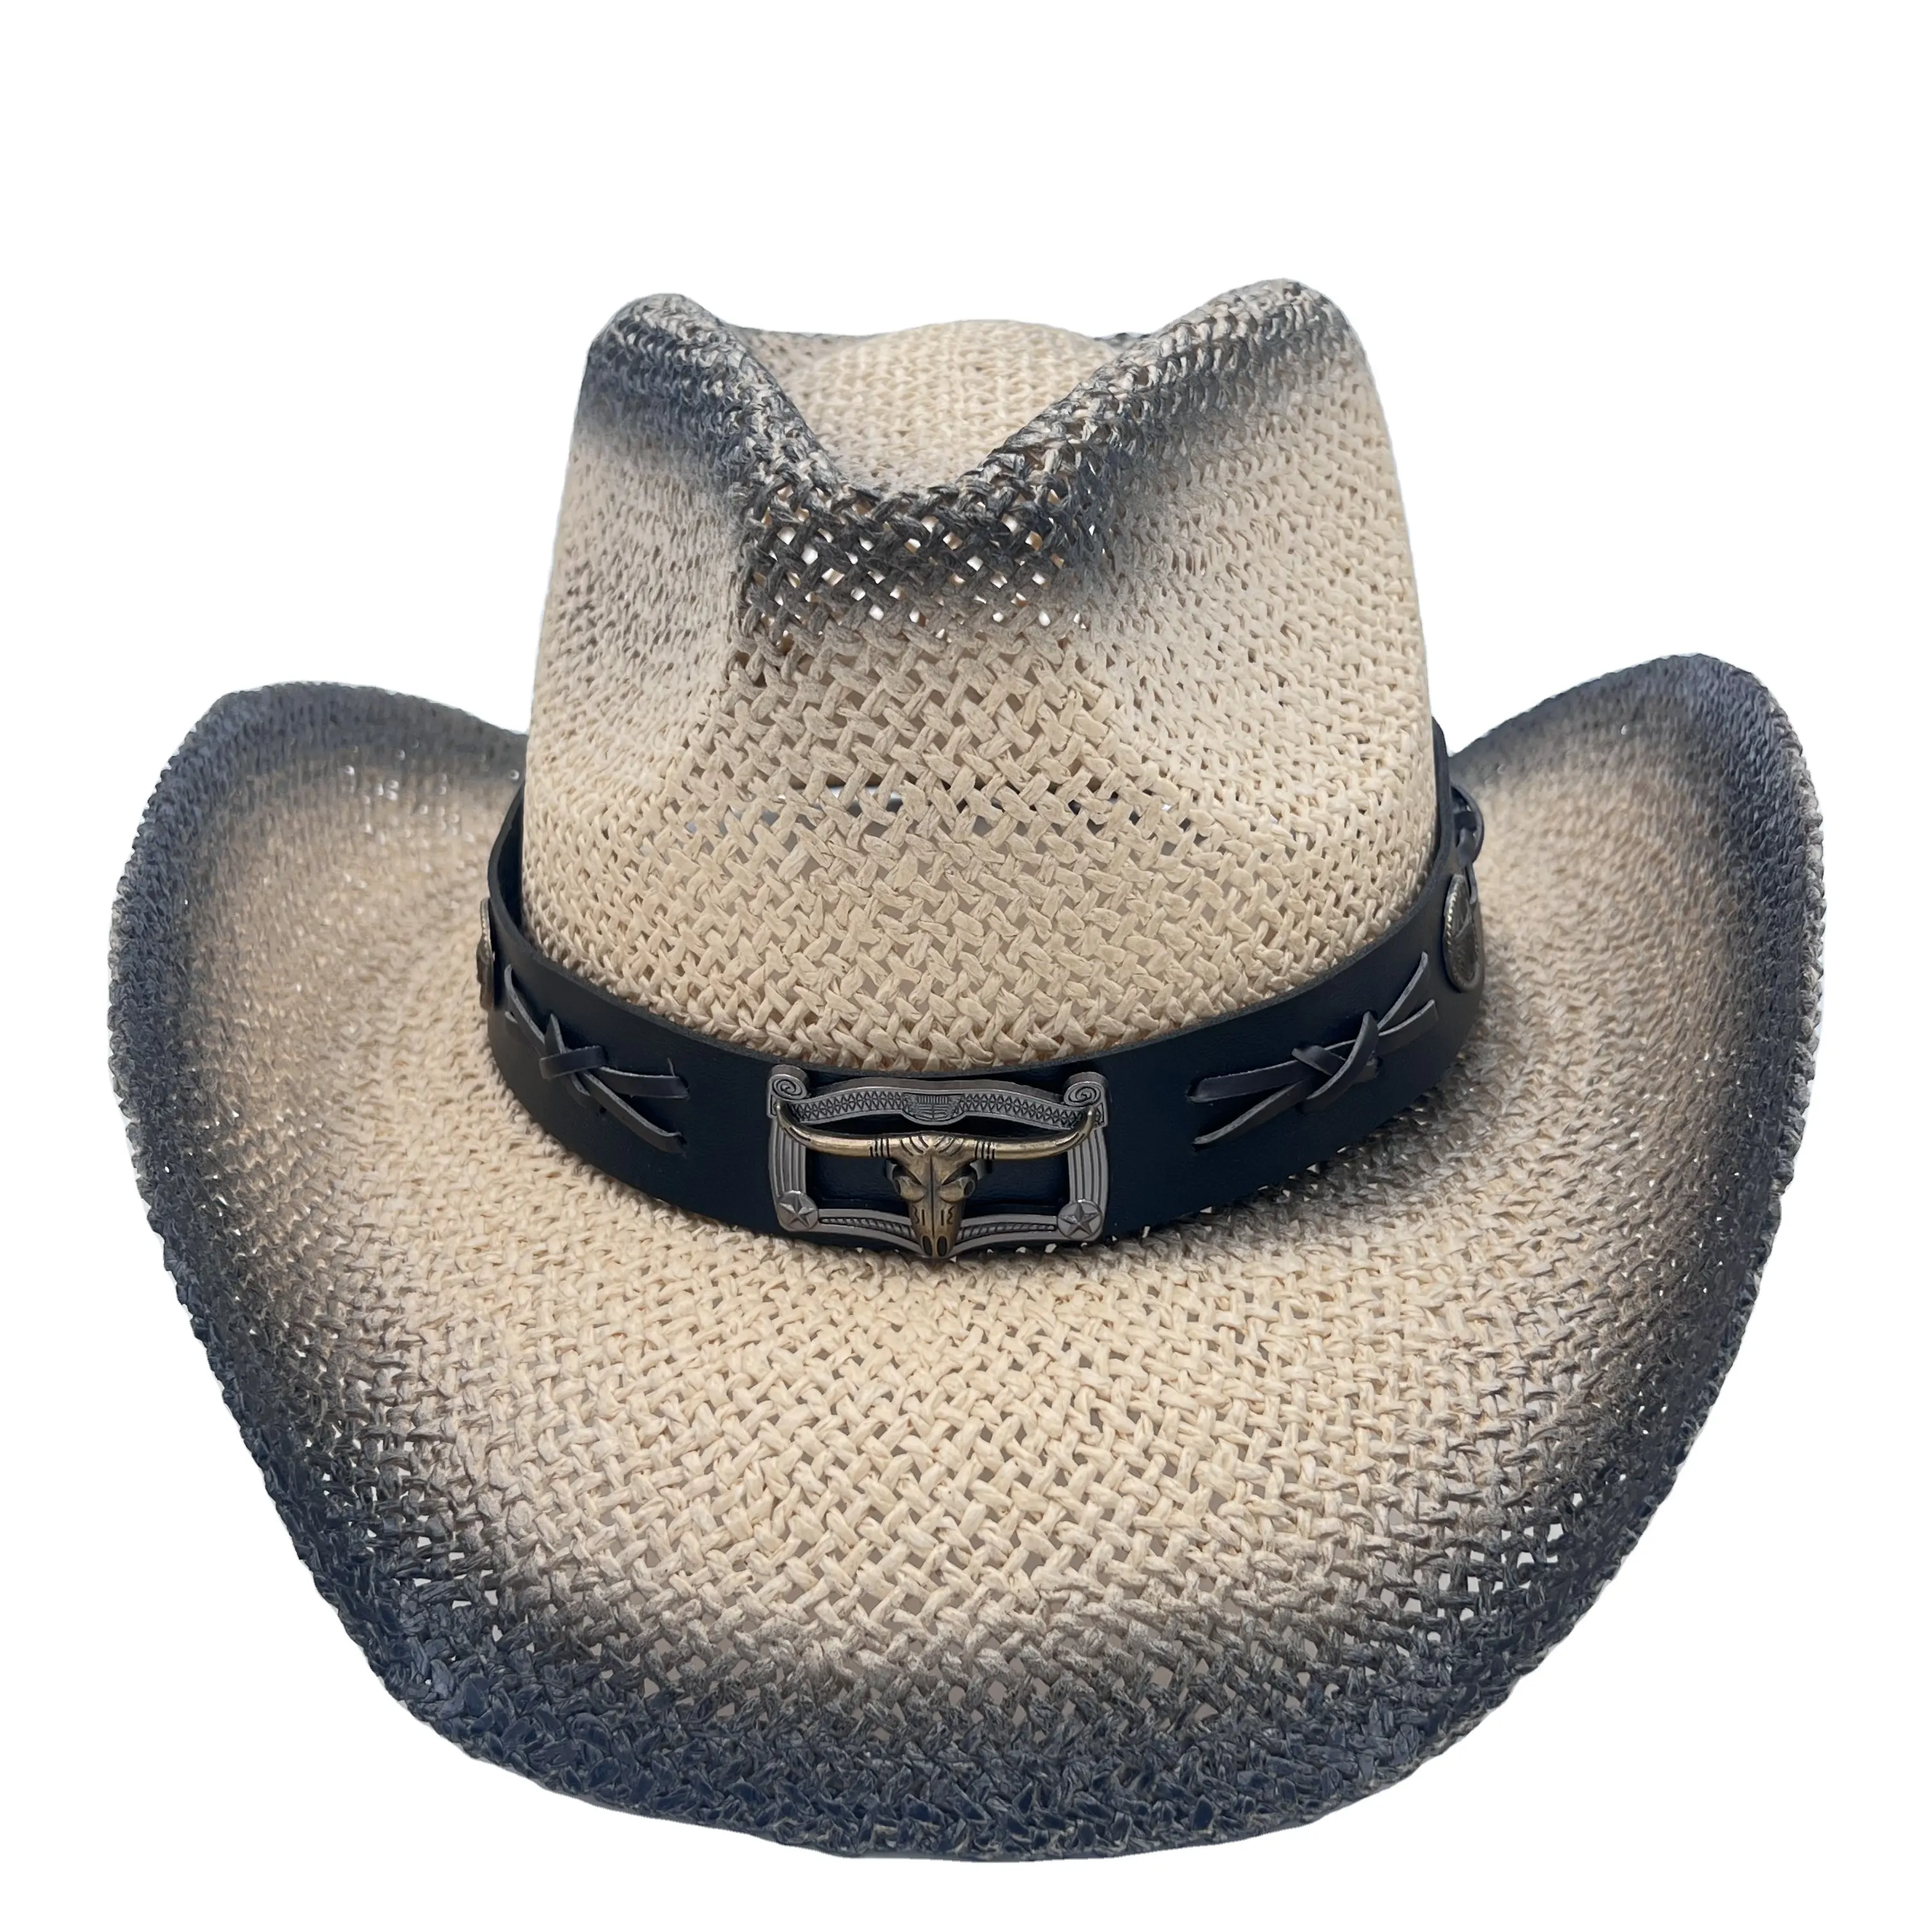 Neueste handgemachte Stroh Cowboyhut Mexiko Sombreros Karbon isierung ausgehöhlt Summer Beach Sun West Cowboyhut